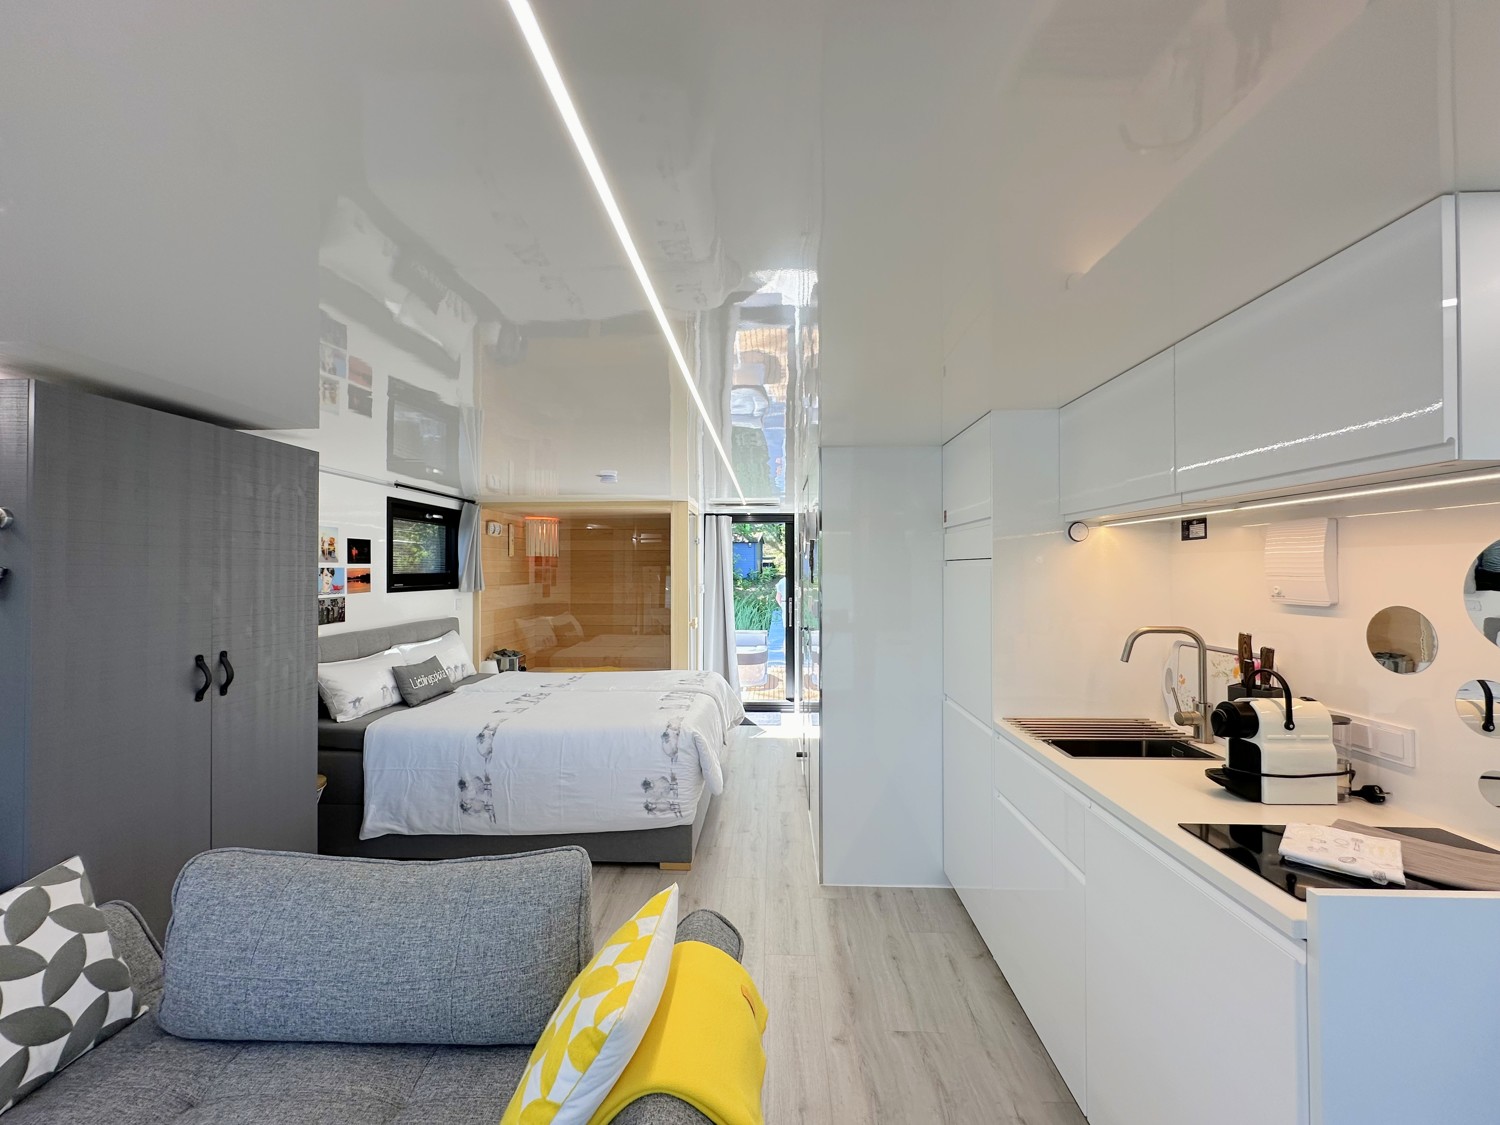 Wohnbereich mit offener Küche (Hausboot)